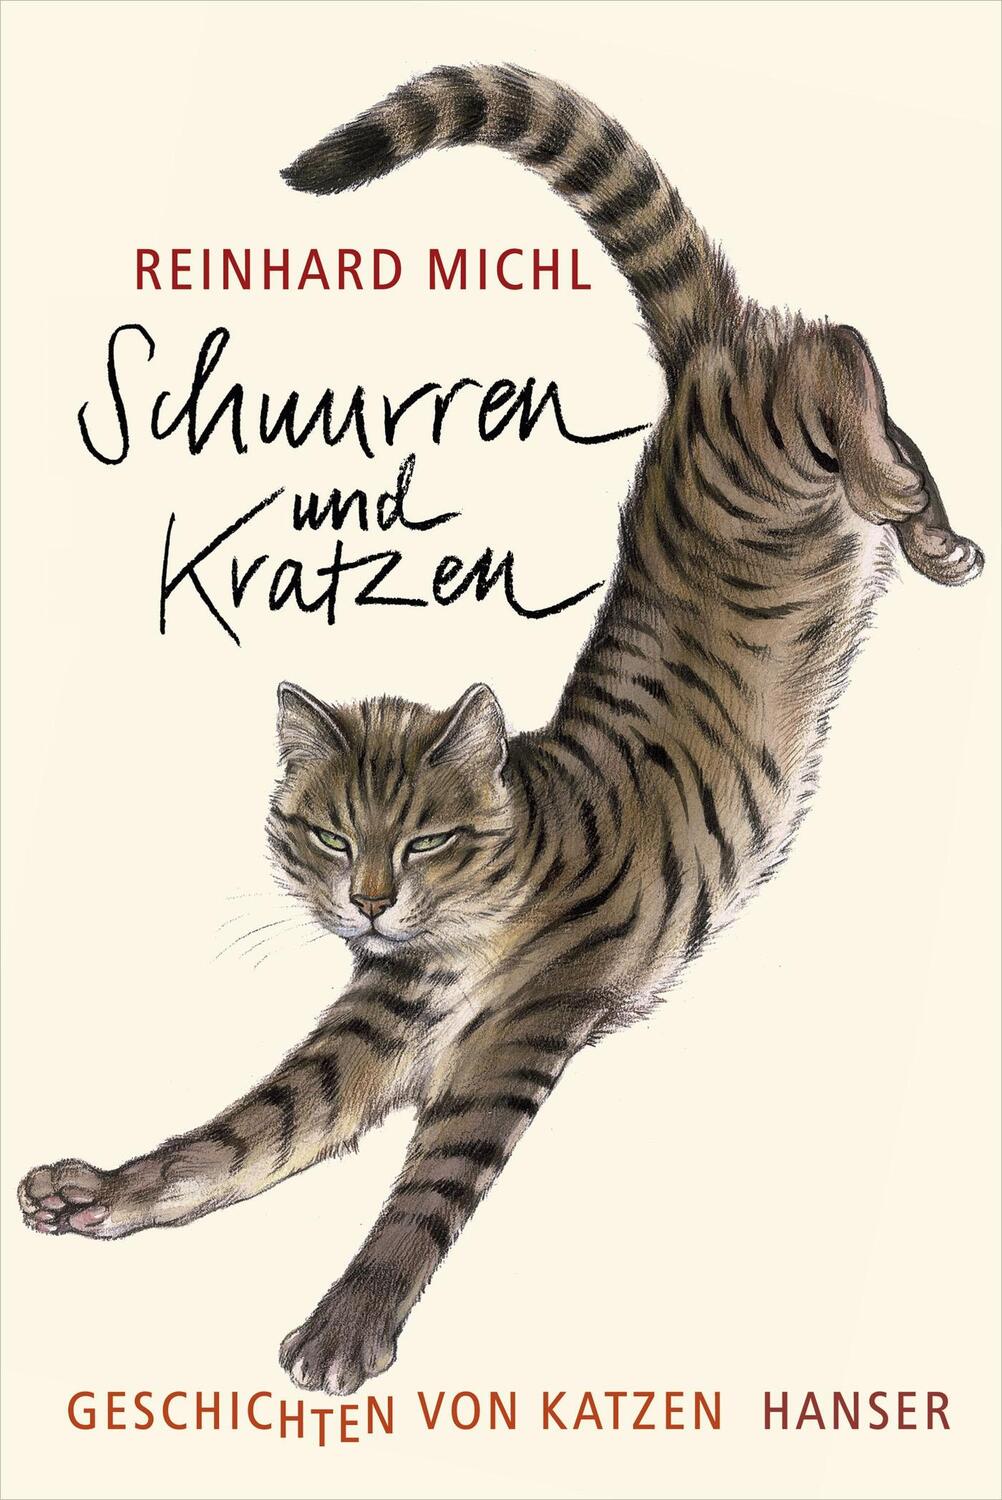 Schnurren und Kratzen - Geschichten von Katzen von Hanser, Carl